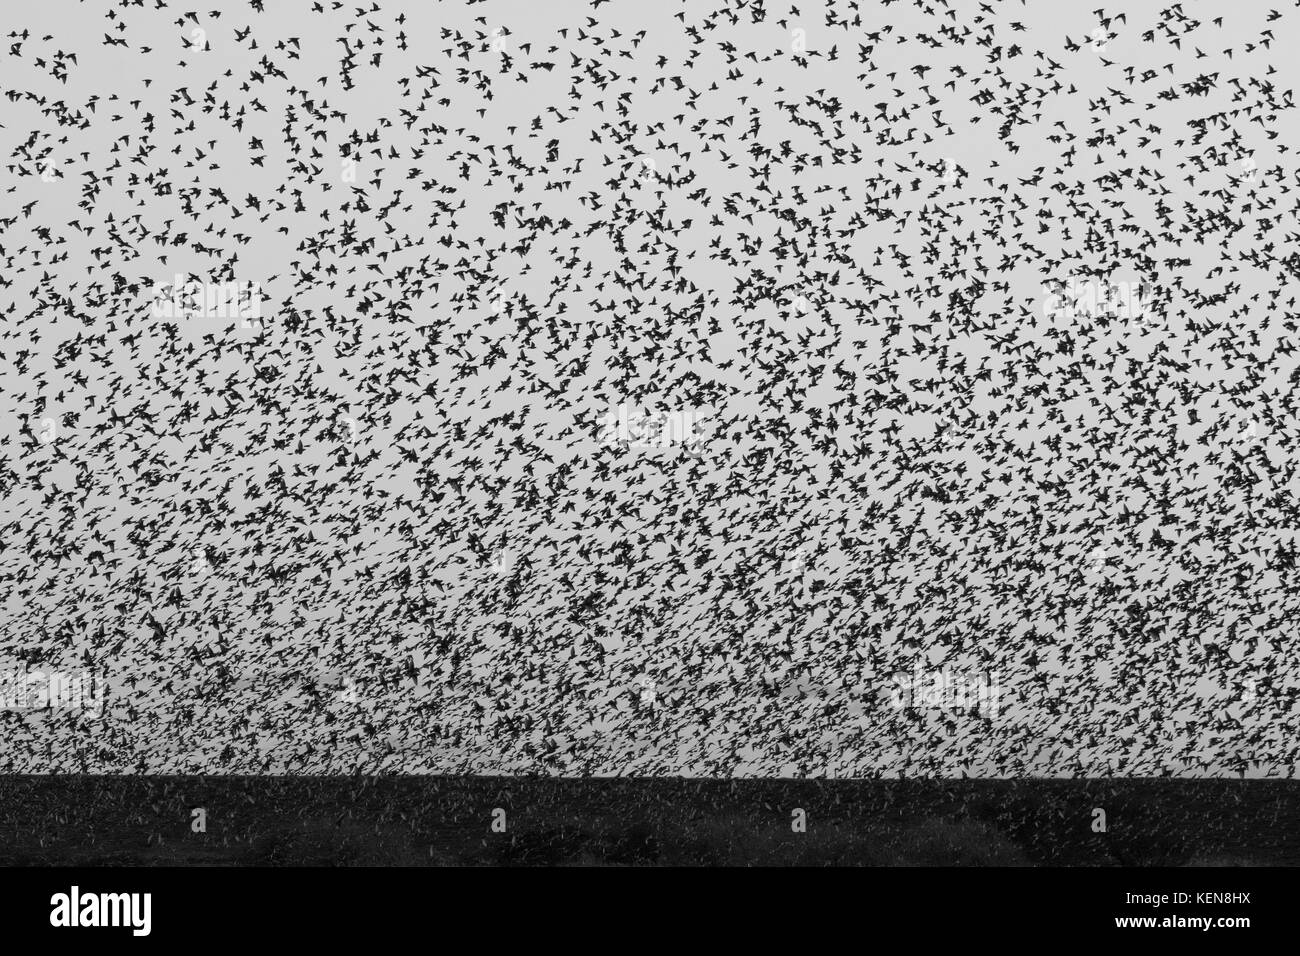 Durante l'autunno la migrazione dal nord Europa migliaia di storni arriva insieme nelle zone umide tra la Danimarca e la Germania. Foto Stock